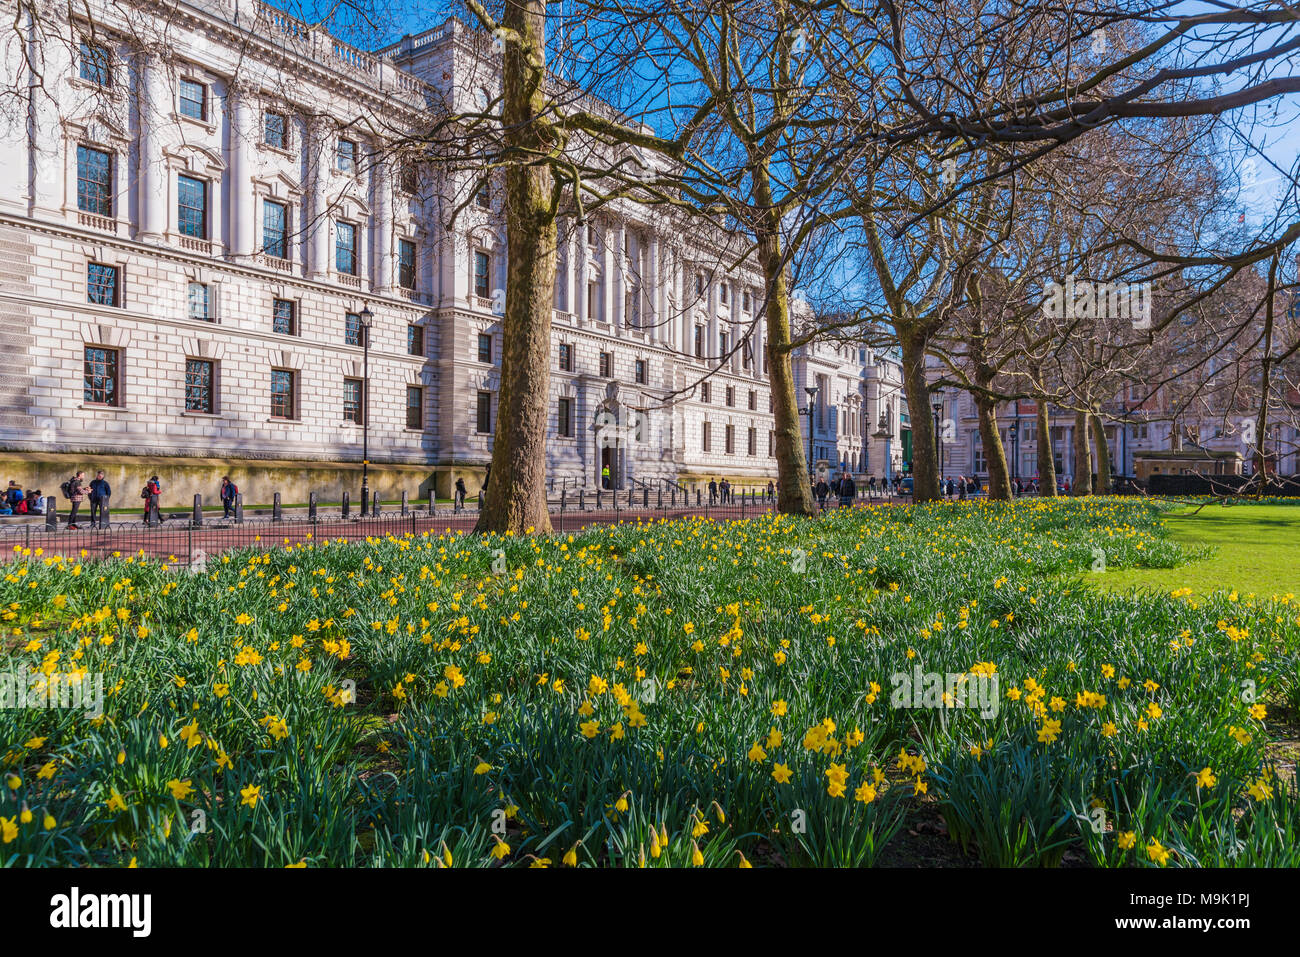 LONDON, GROSSBRITANNIEN, 21. März: St James's Park Blumen außerhalb der Household Cavalry Museum in Westminster am 21. März 2018 in London. Stockfoto